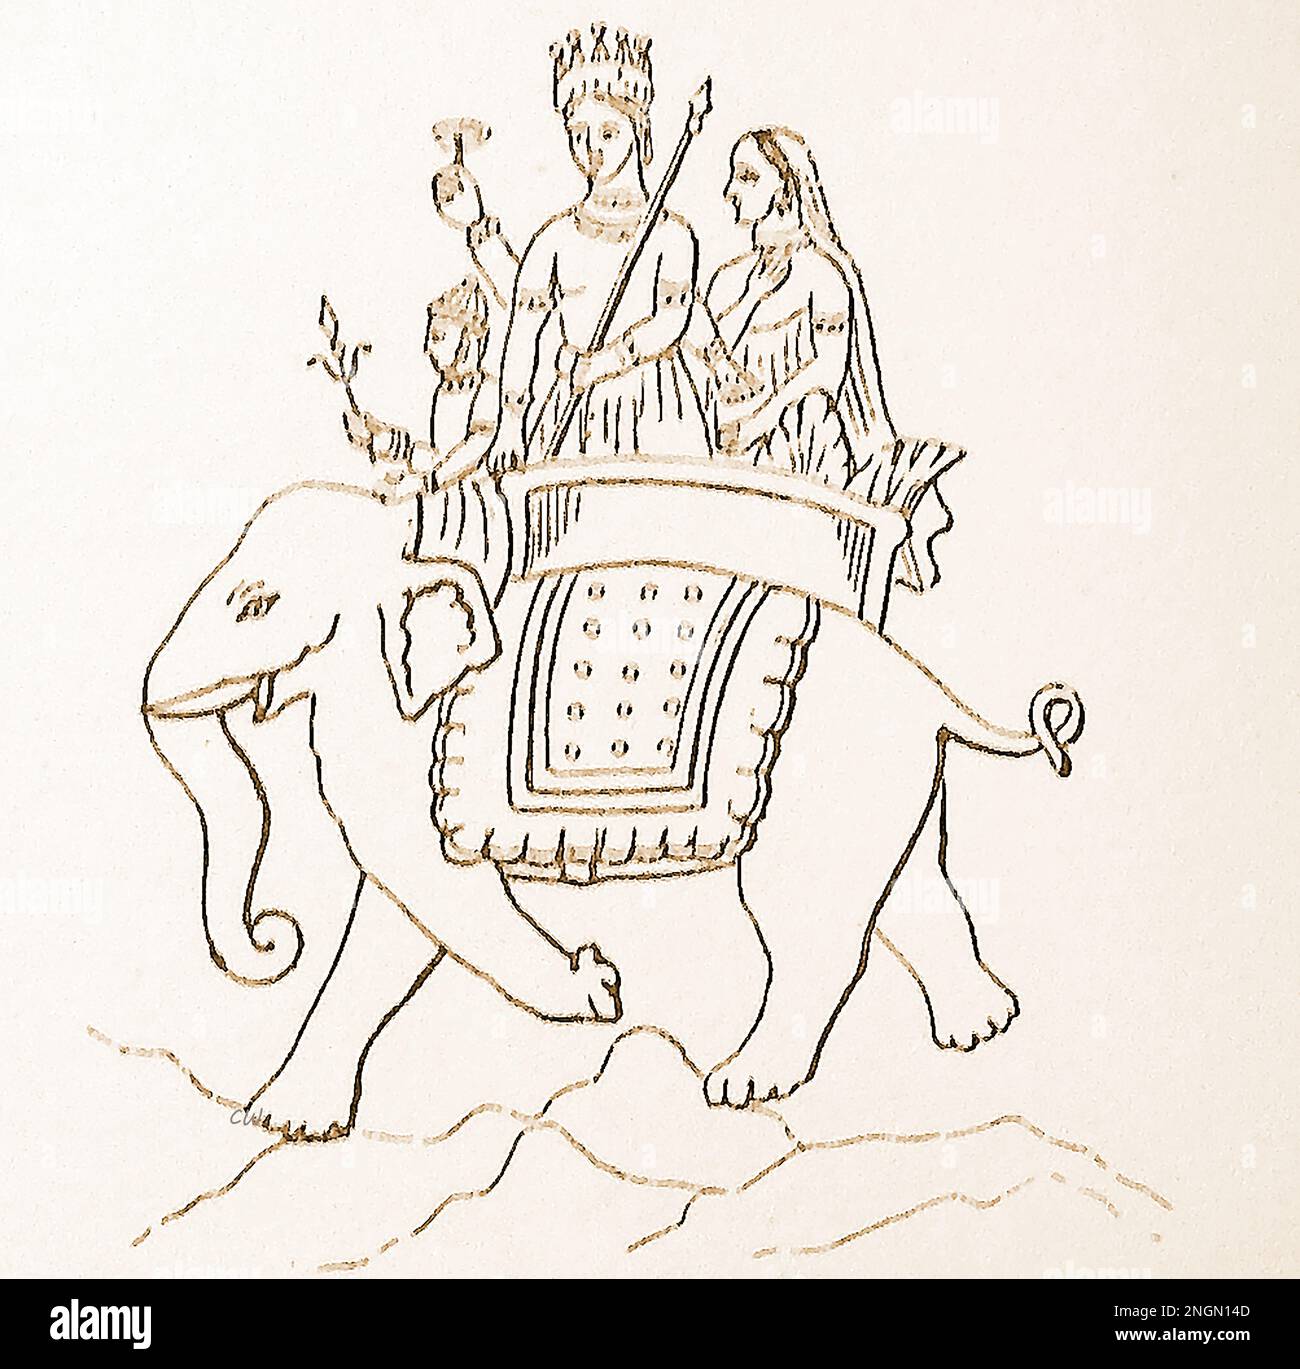 Un'illustrazione del dizionario di fine 19th secolo della divinità indù vedica, INDRA, ( इन्द्र) cavalcando un elefante. Egli è considerato come il re del Devas e re di Svarga (cielo) anche Dio della luce, Thunder, tempeste e pioggia -- - 19 वीं शताब्दी के उत्तरार्ध में वैदिक हिंदू देवता, इंद्र, (इन्द्र) का एक शब्दकोश चित्रण एक हाथी की सवारी करता है। उन्हें देवों के राजा और स्वर्ग (स्वर्ग) के राजा के रूप में माना जाता है, साथ ही बिजली, गरज, तूफान और बारिश के देवता भी Foto Stock